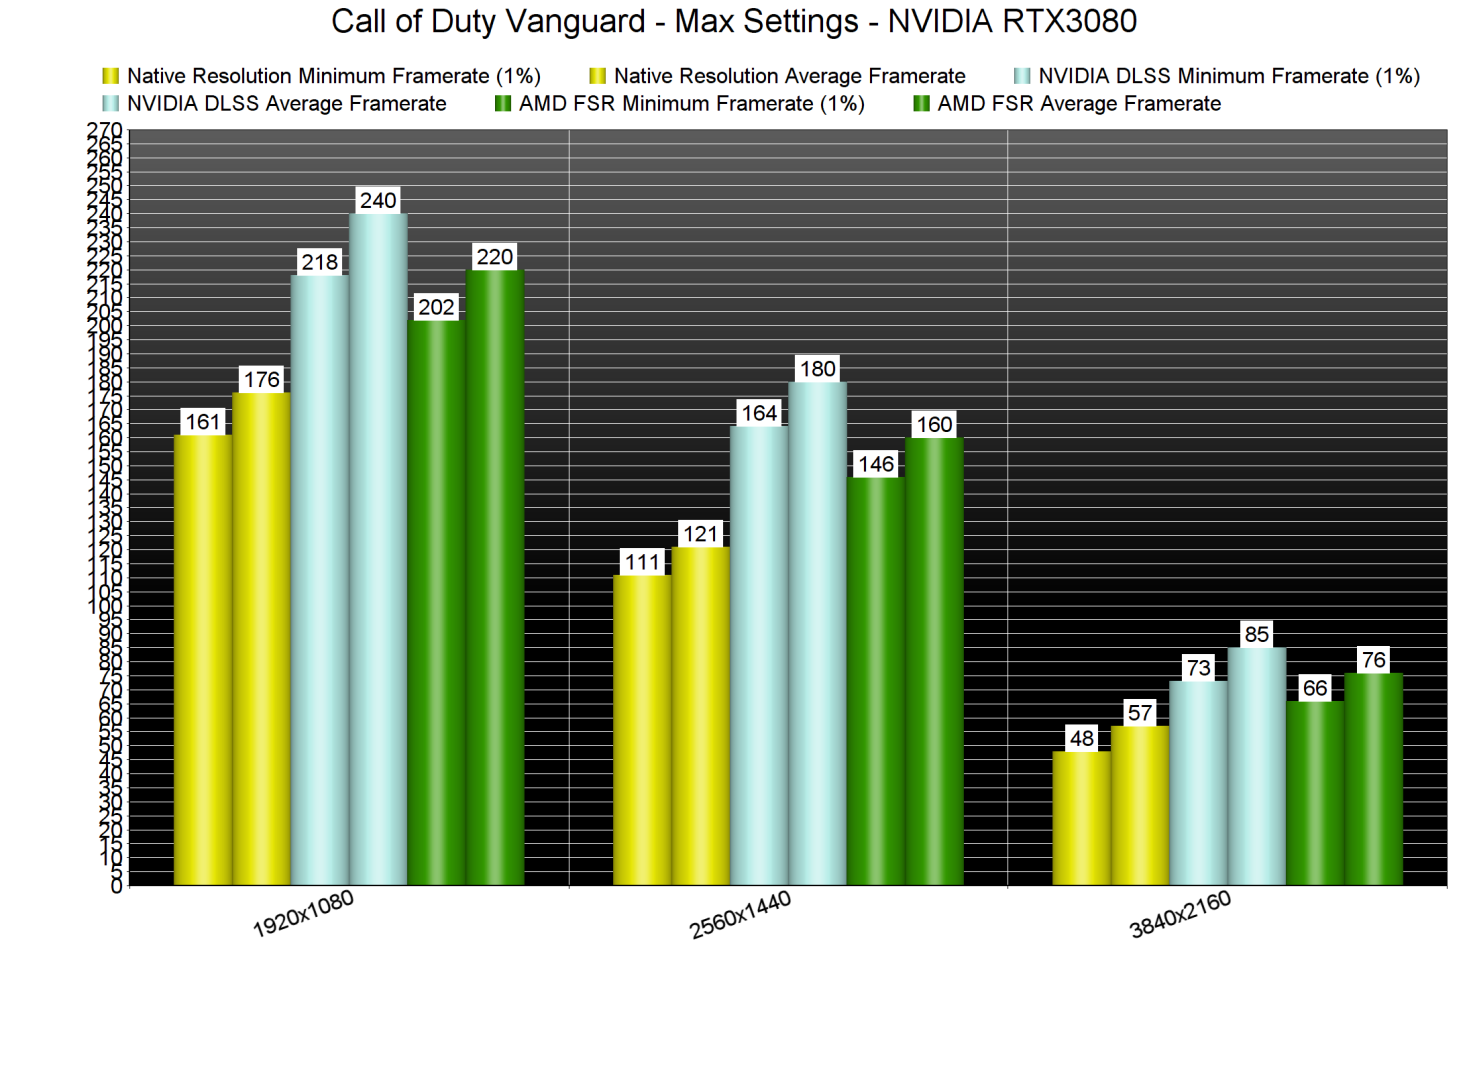 Call of Duty Vanguard DLSS vs FSR benchmarks